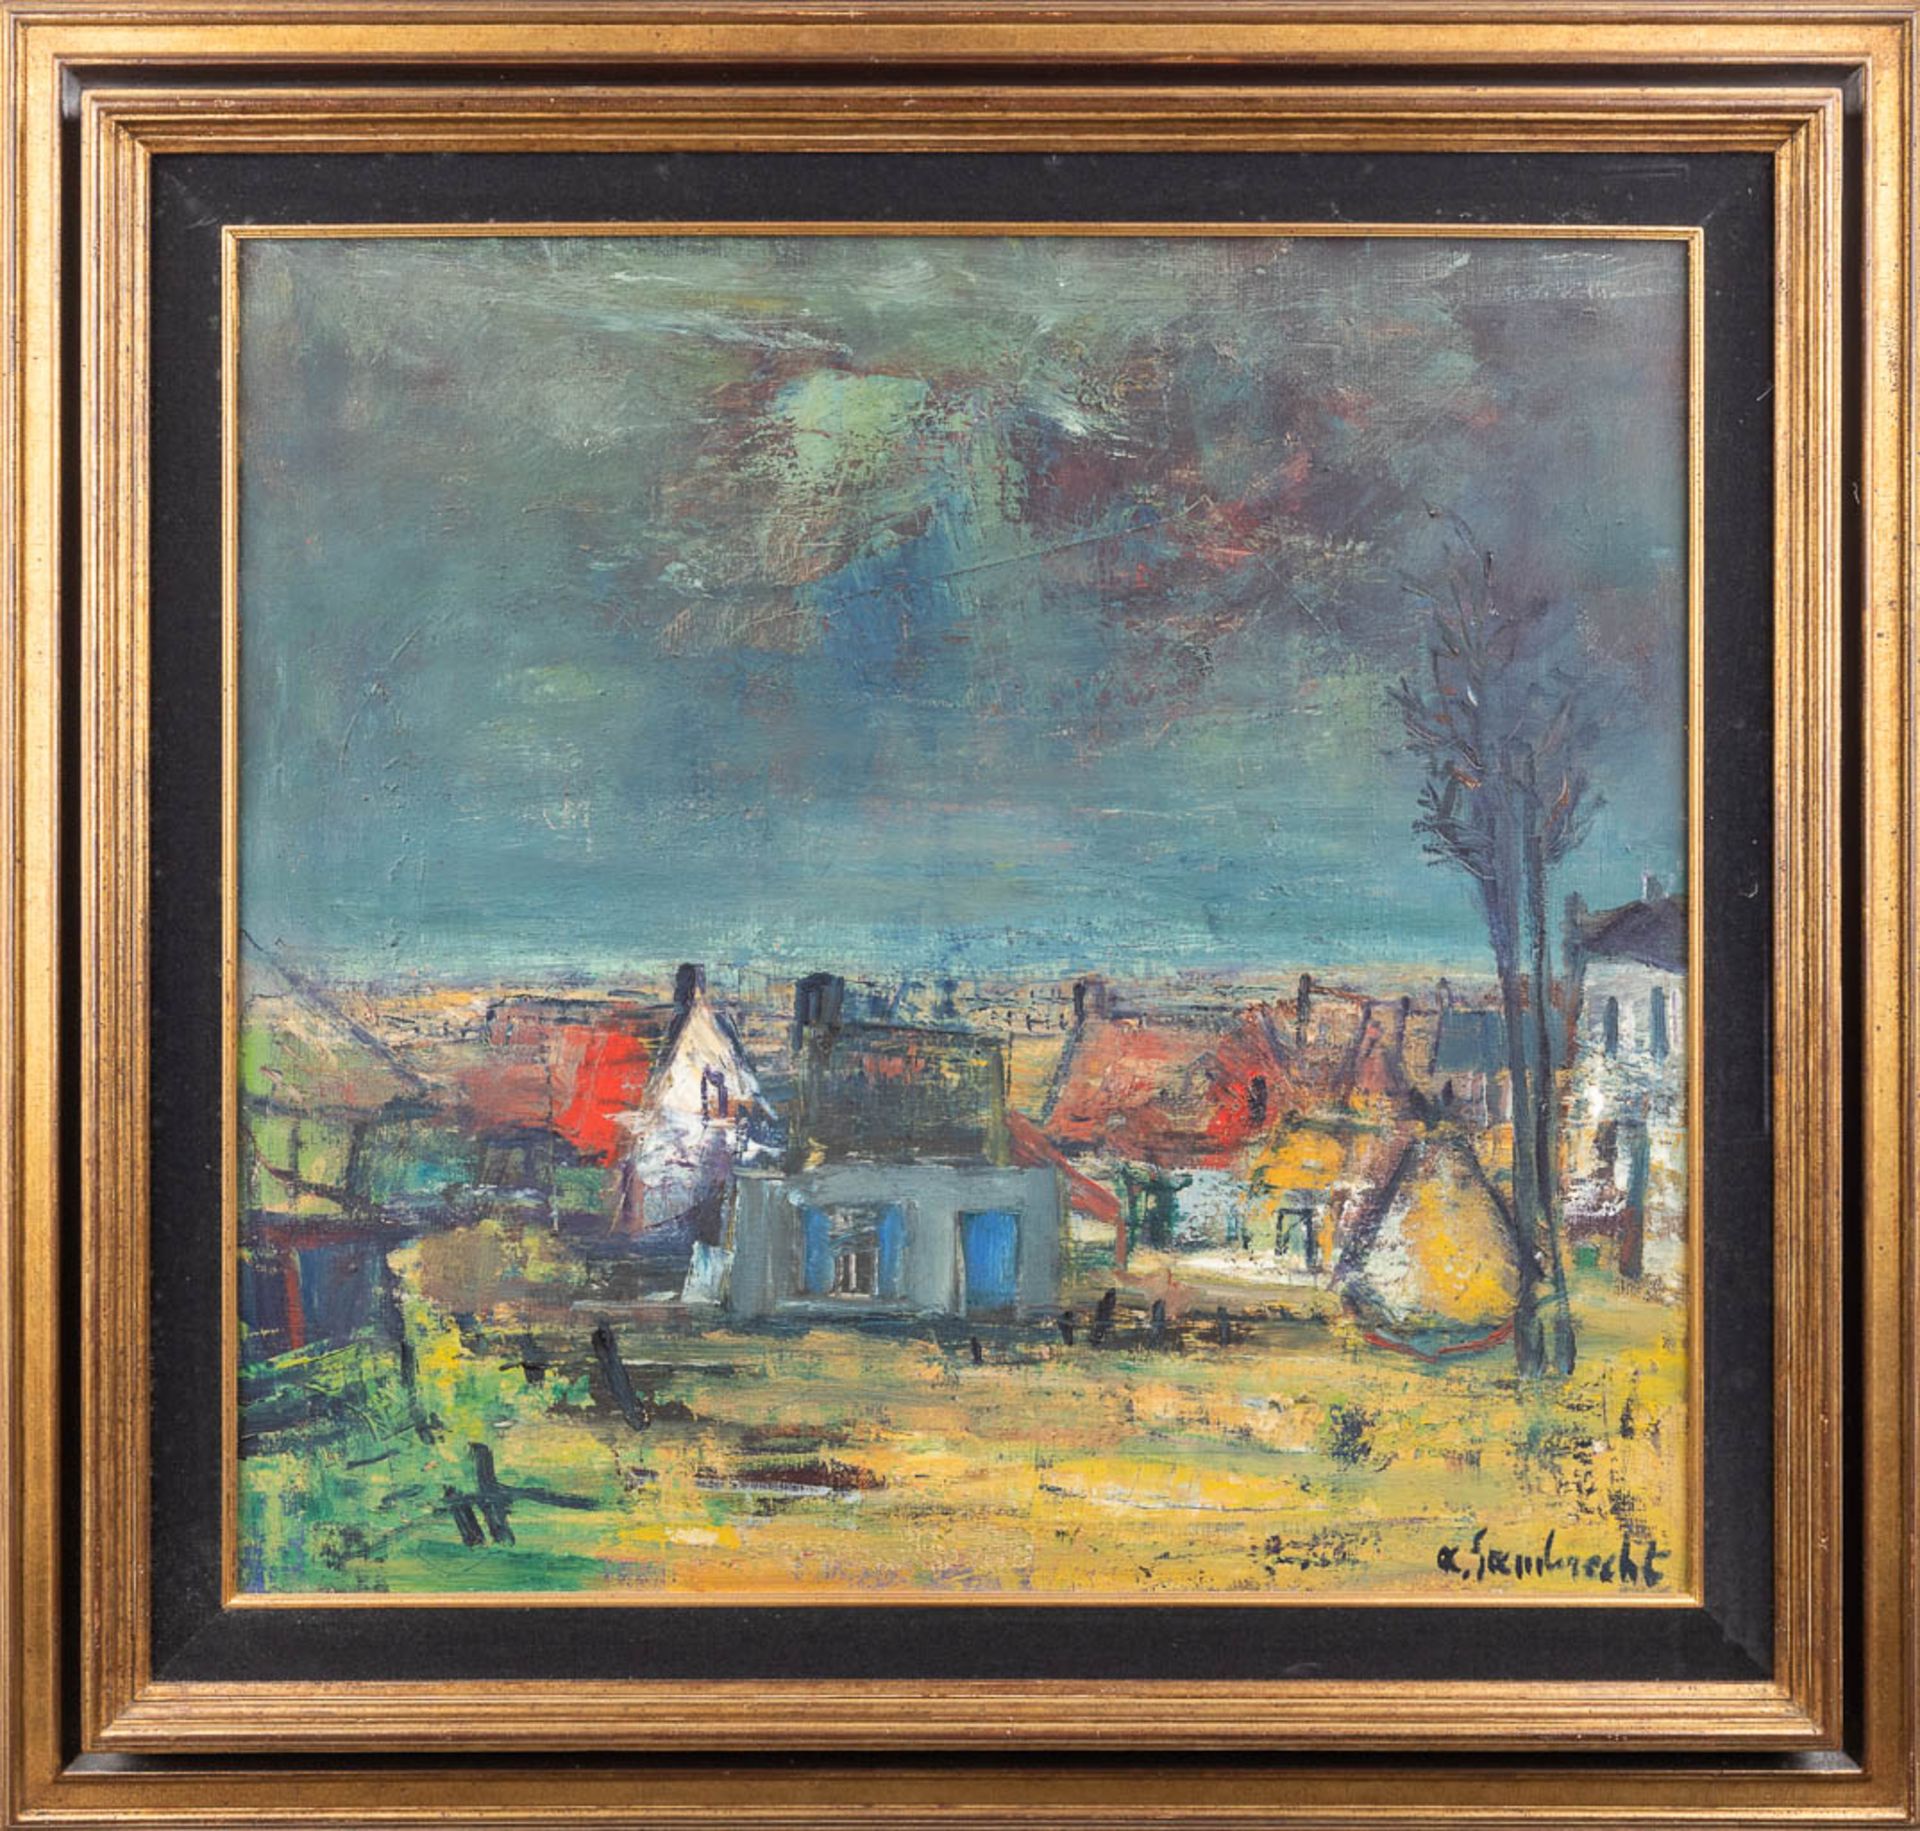 Arthur LAMBRECHT (1904-1983) 'Village View' oil on canvas. (W: 76 x H: 71 cm) - Image 3 of 6